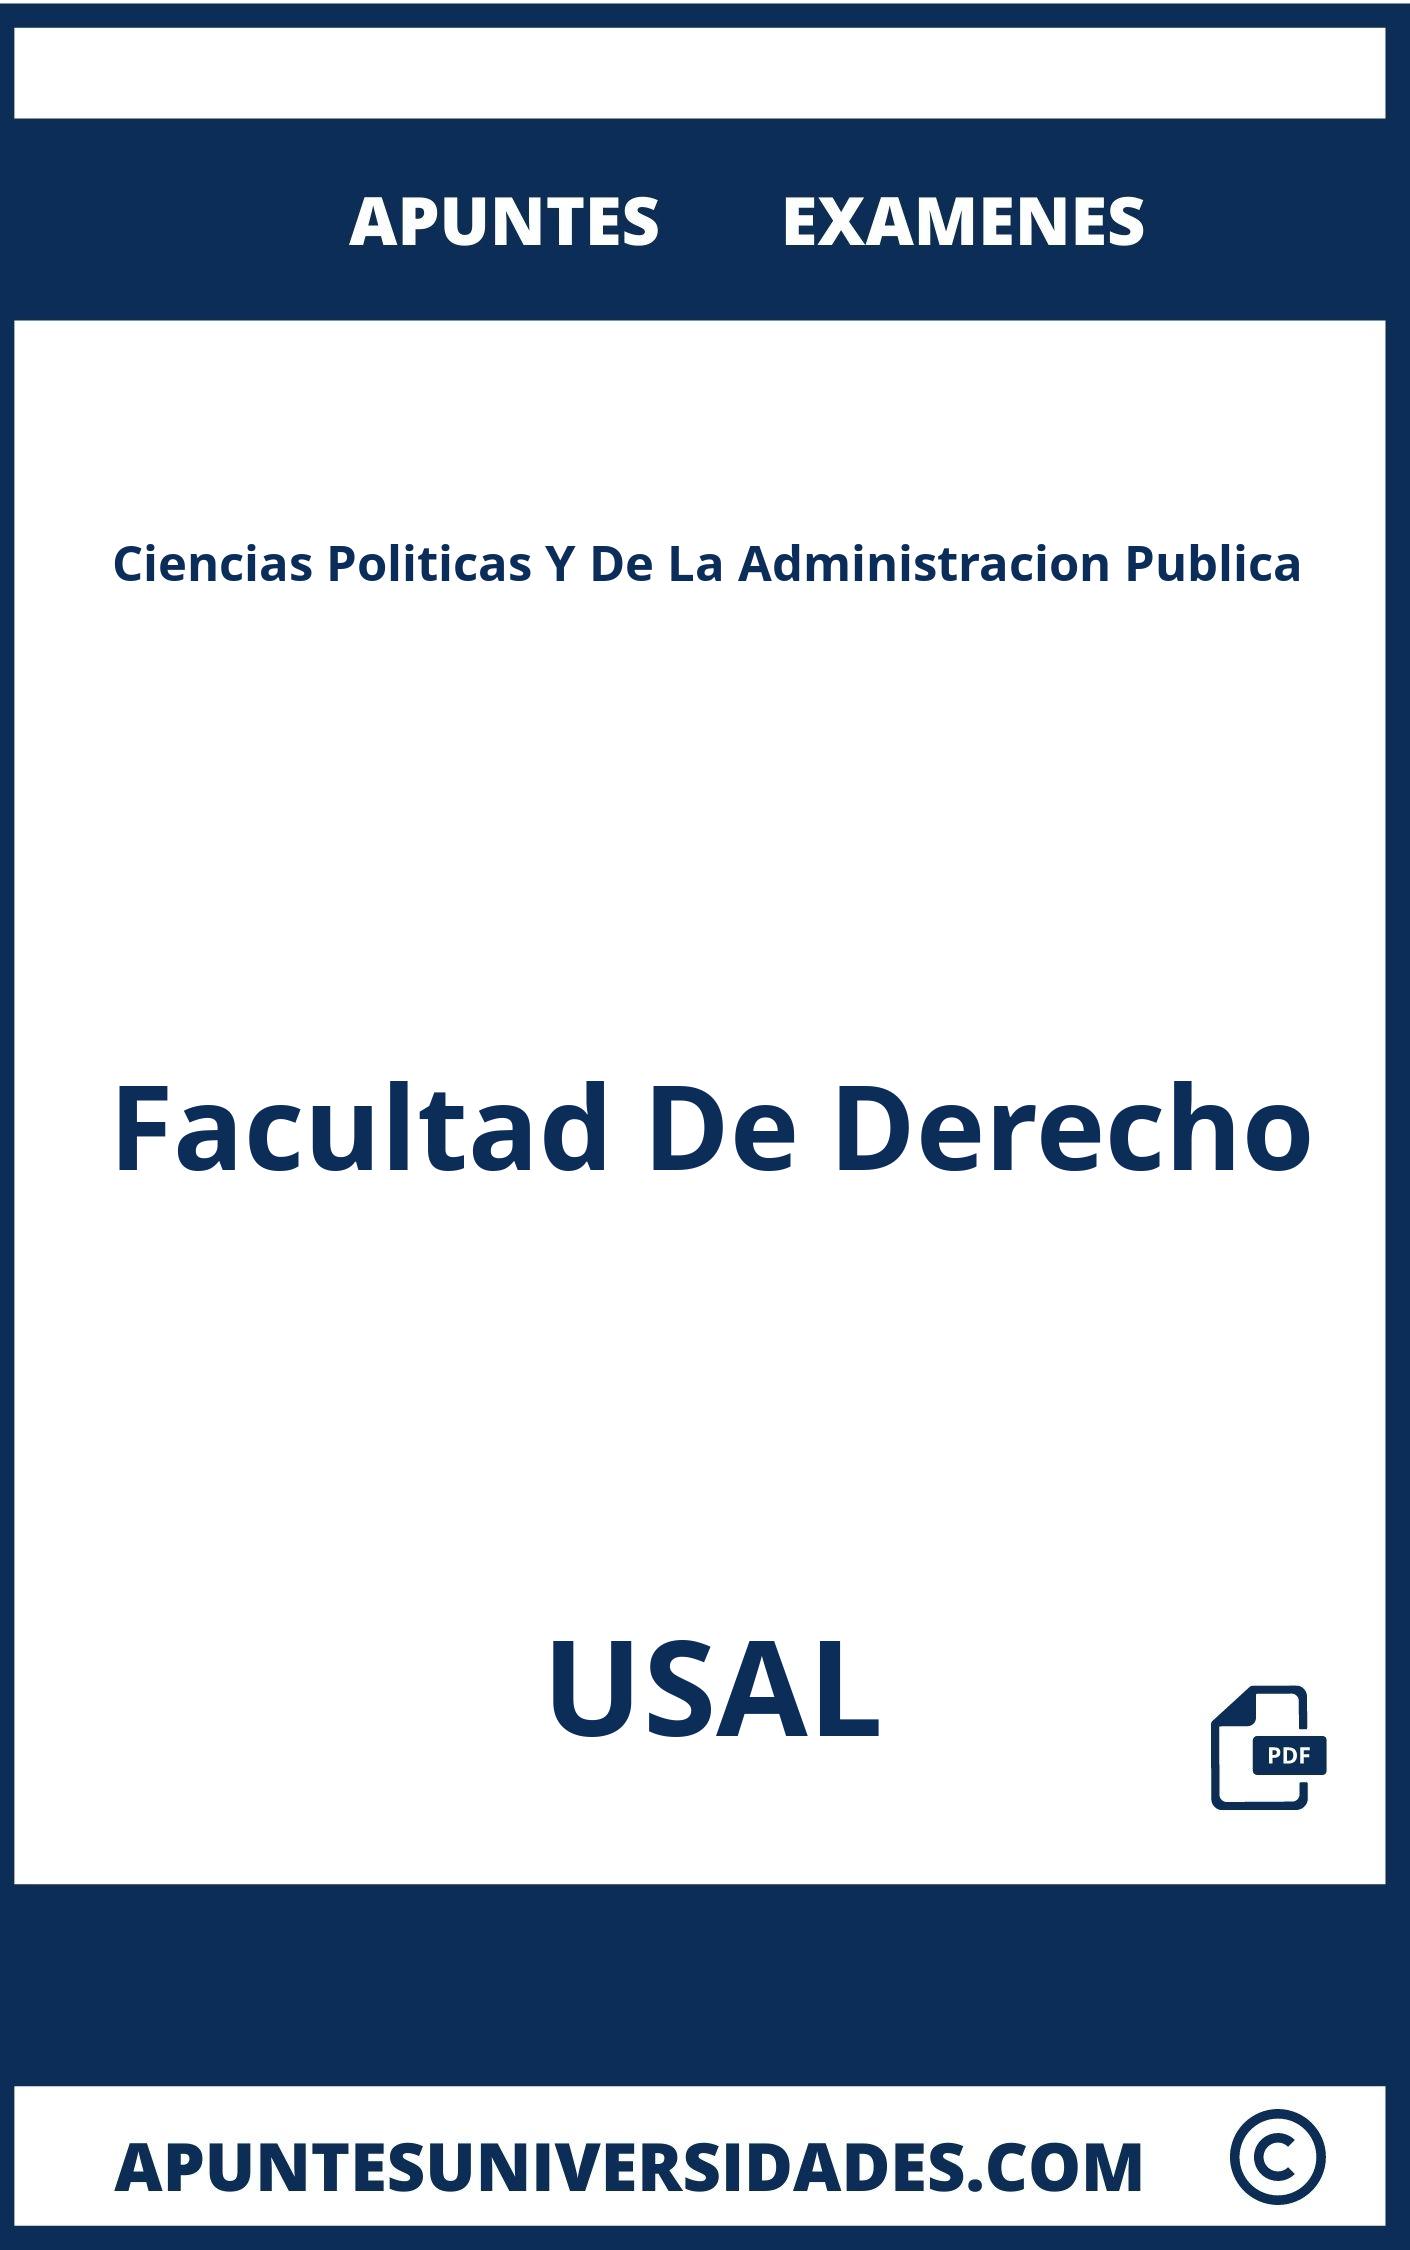 Ciencias Politicas Y De La Administracion Publica USAL Examenes Apuntes